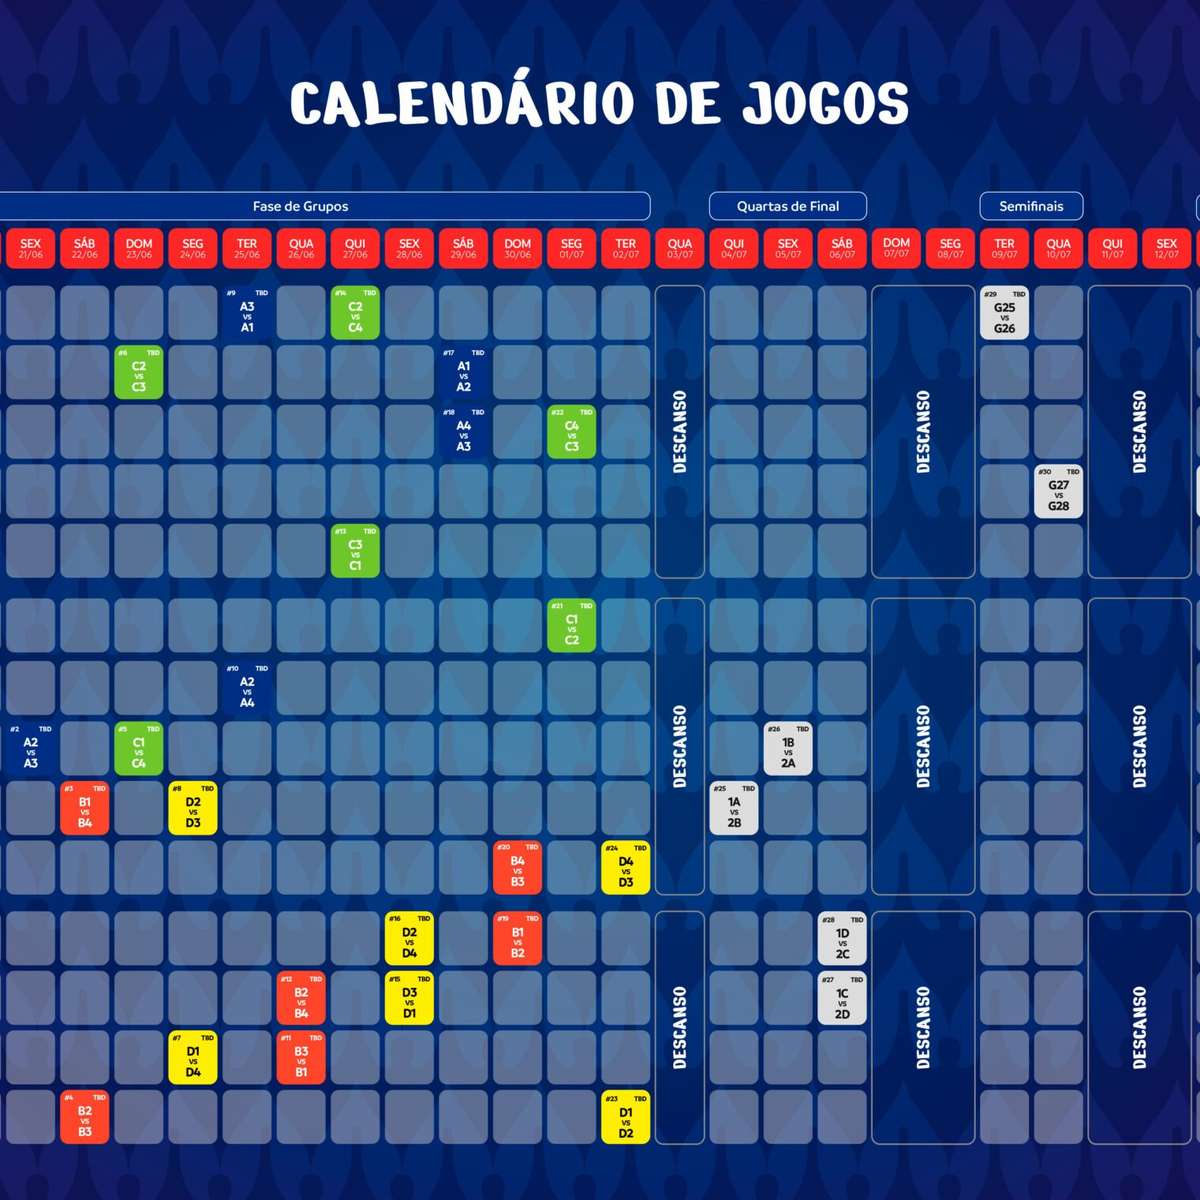 Conmebol define calendário da Copa América; Brasil fará 2 jogos em SP na 1ª  fase - ISTOÉ Independente